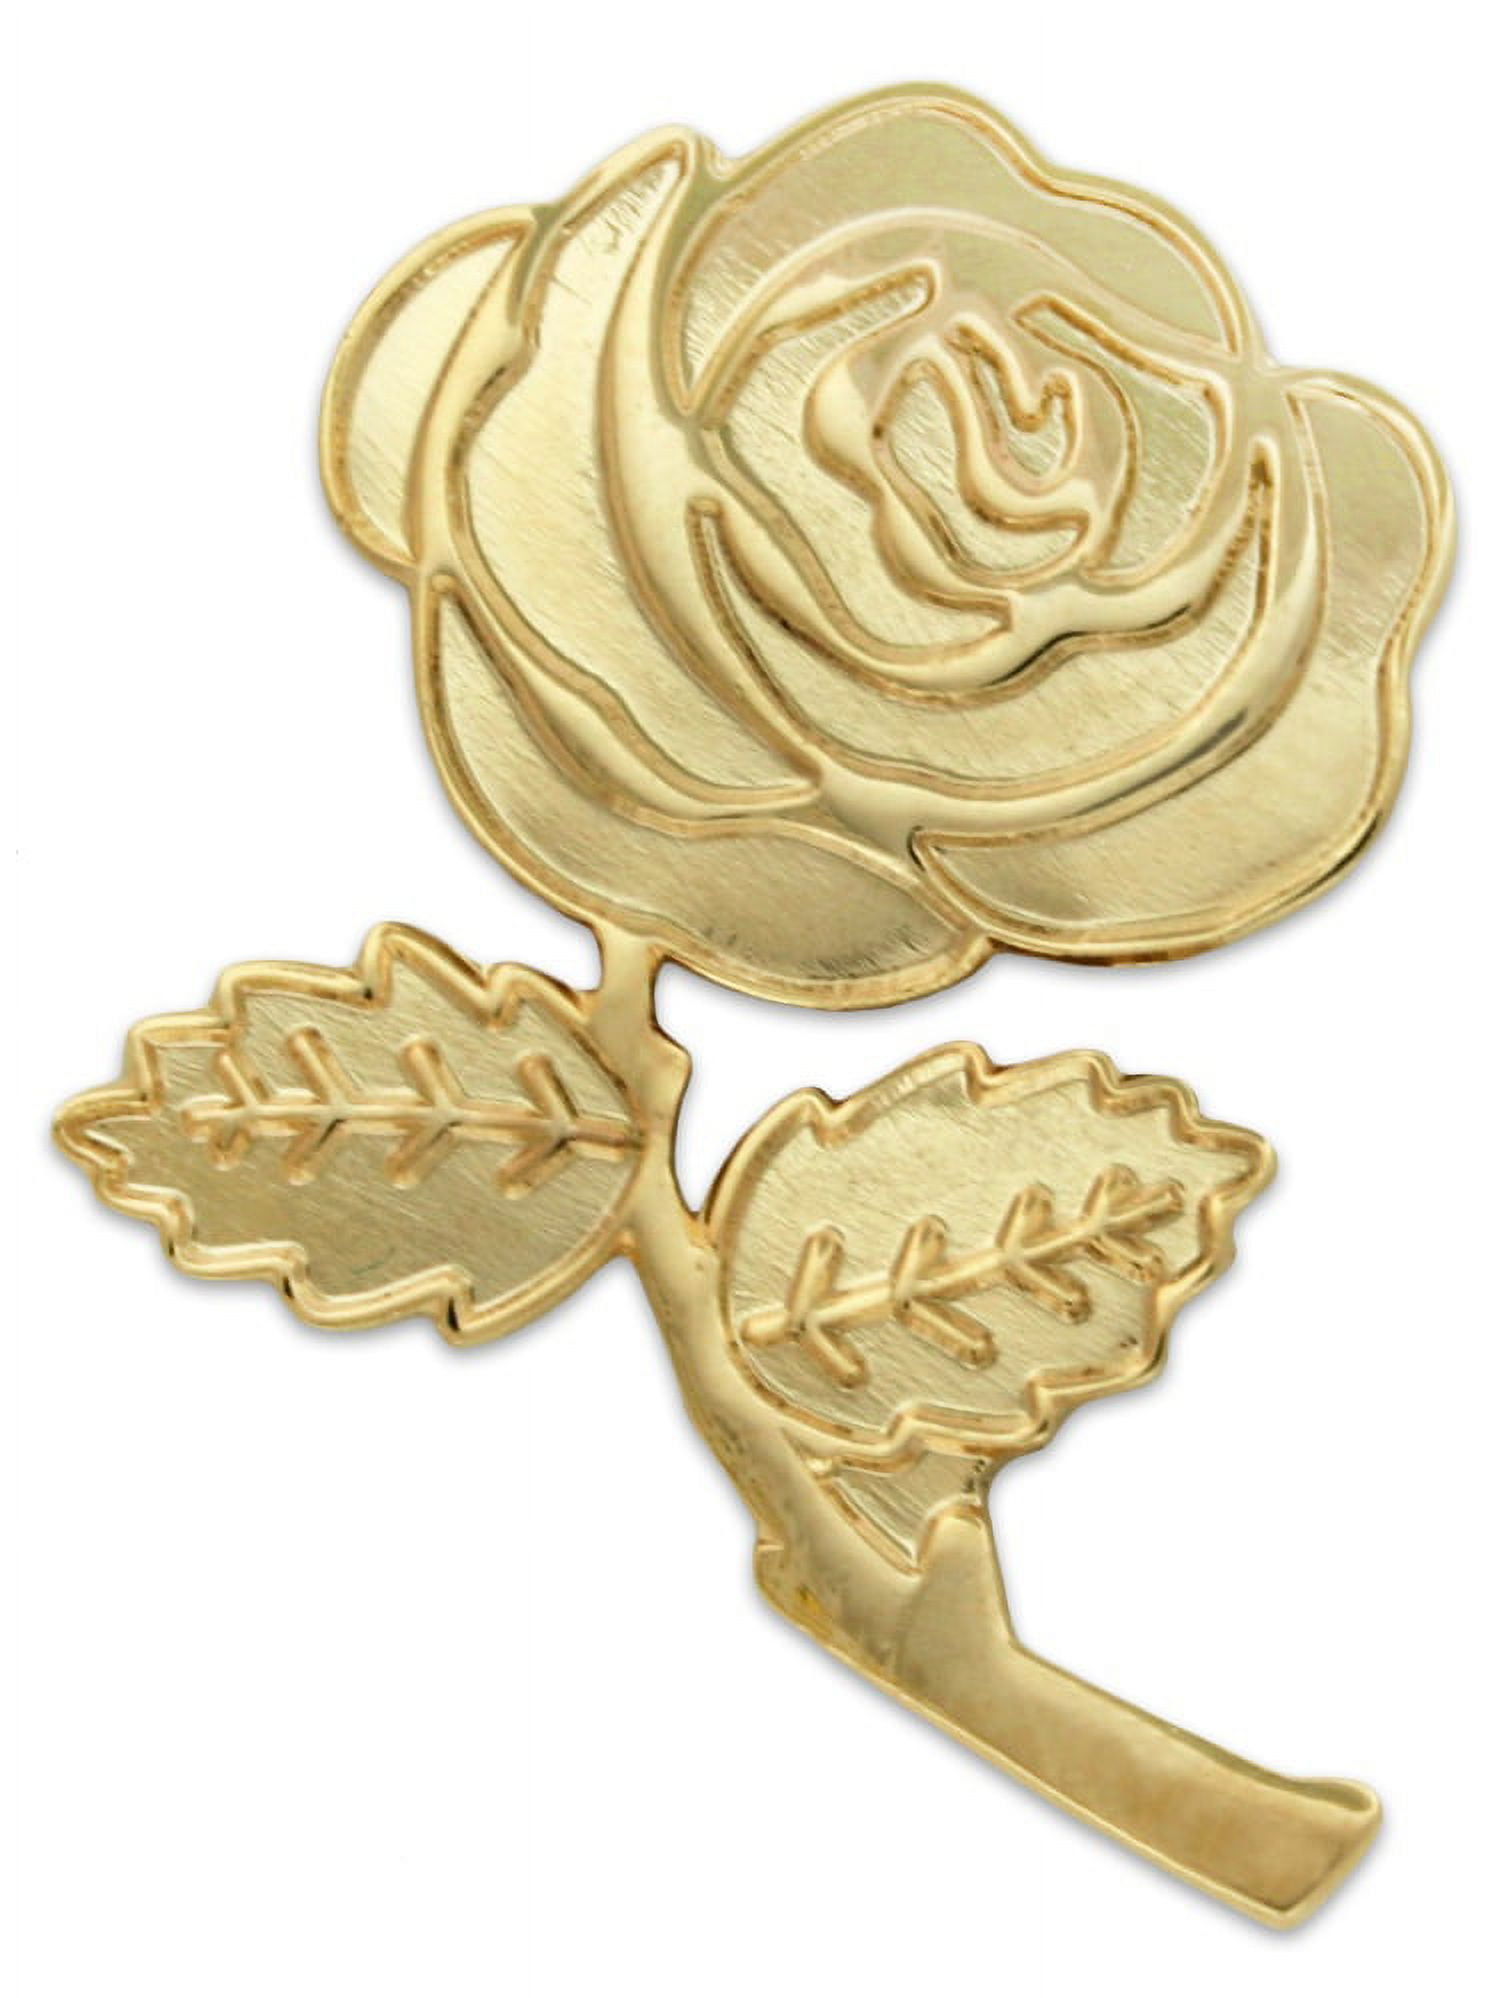 3512mm Safety Pins, Brooch Pins Metal Pin Sewing Pin Rose Gold Pin Jewelry  Pin Bar Pins Decorative Pin Pin for Clothes/ Hats 20pcs 